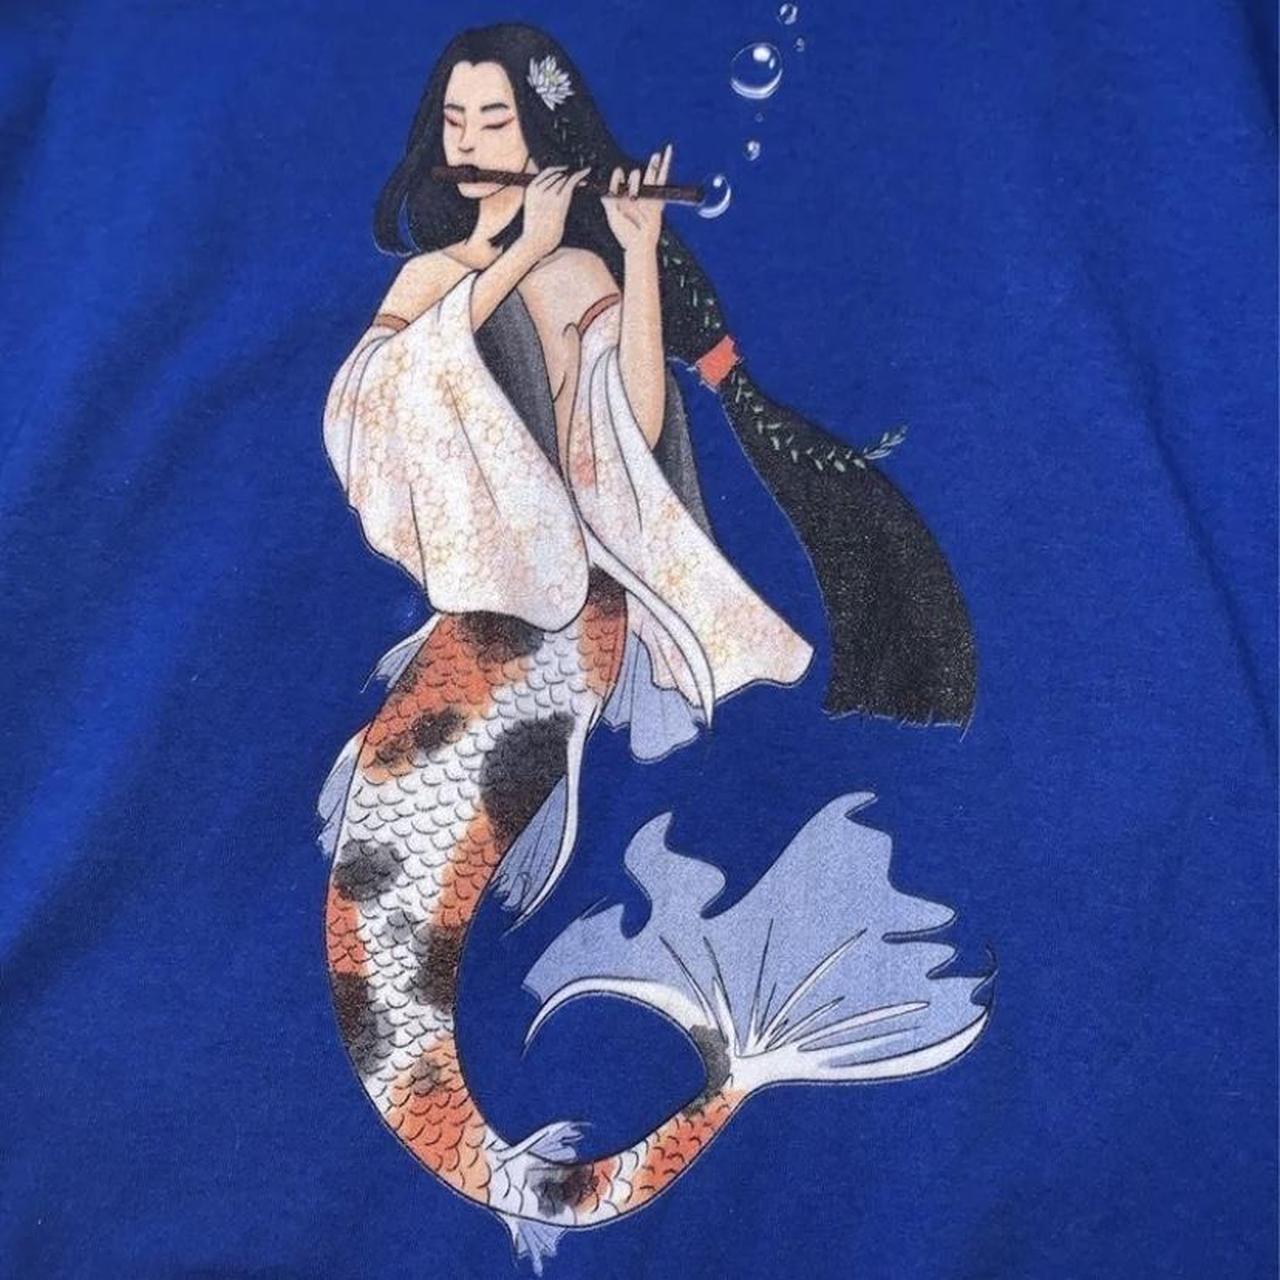 Japanese Koi Fish Shirt